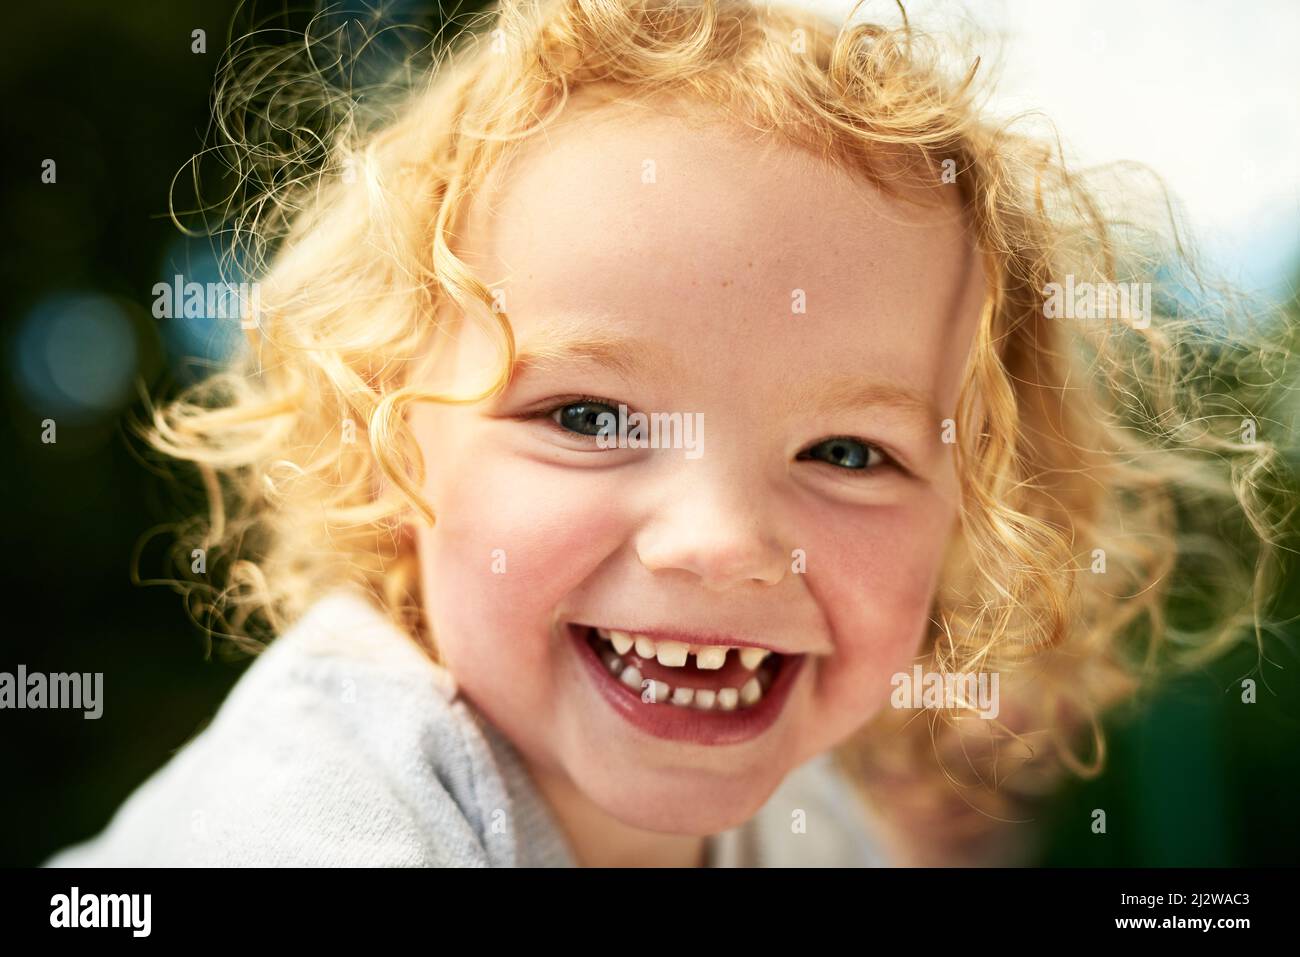 Tout cela pour s'amuser. Portrait d'une adorable petite fille s'amusant à l'extérieur. Banque D'Images